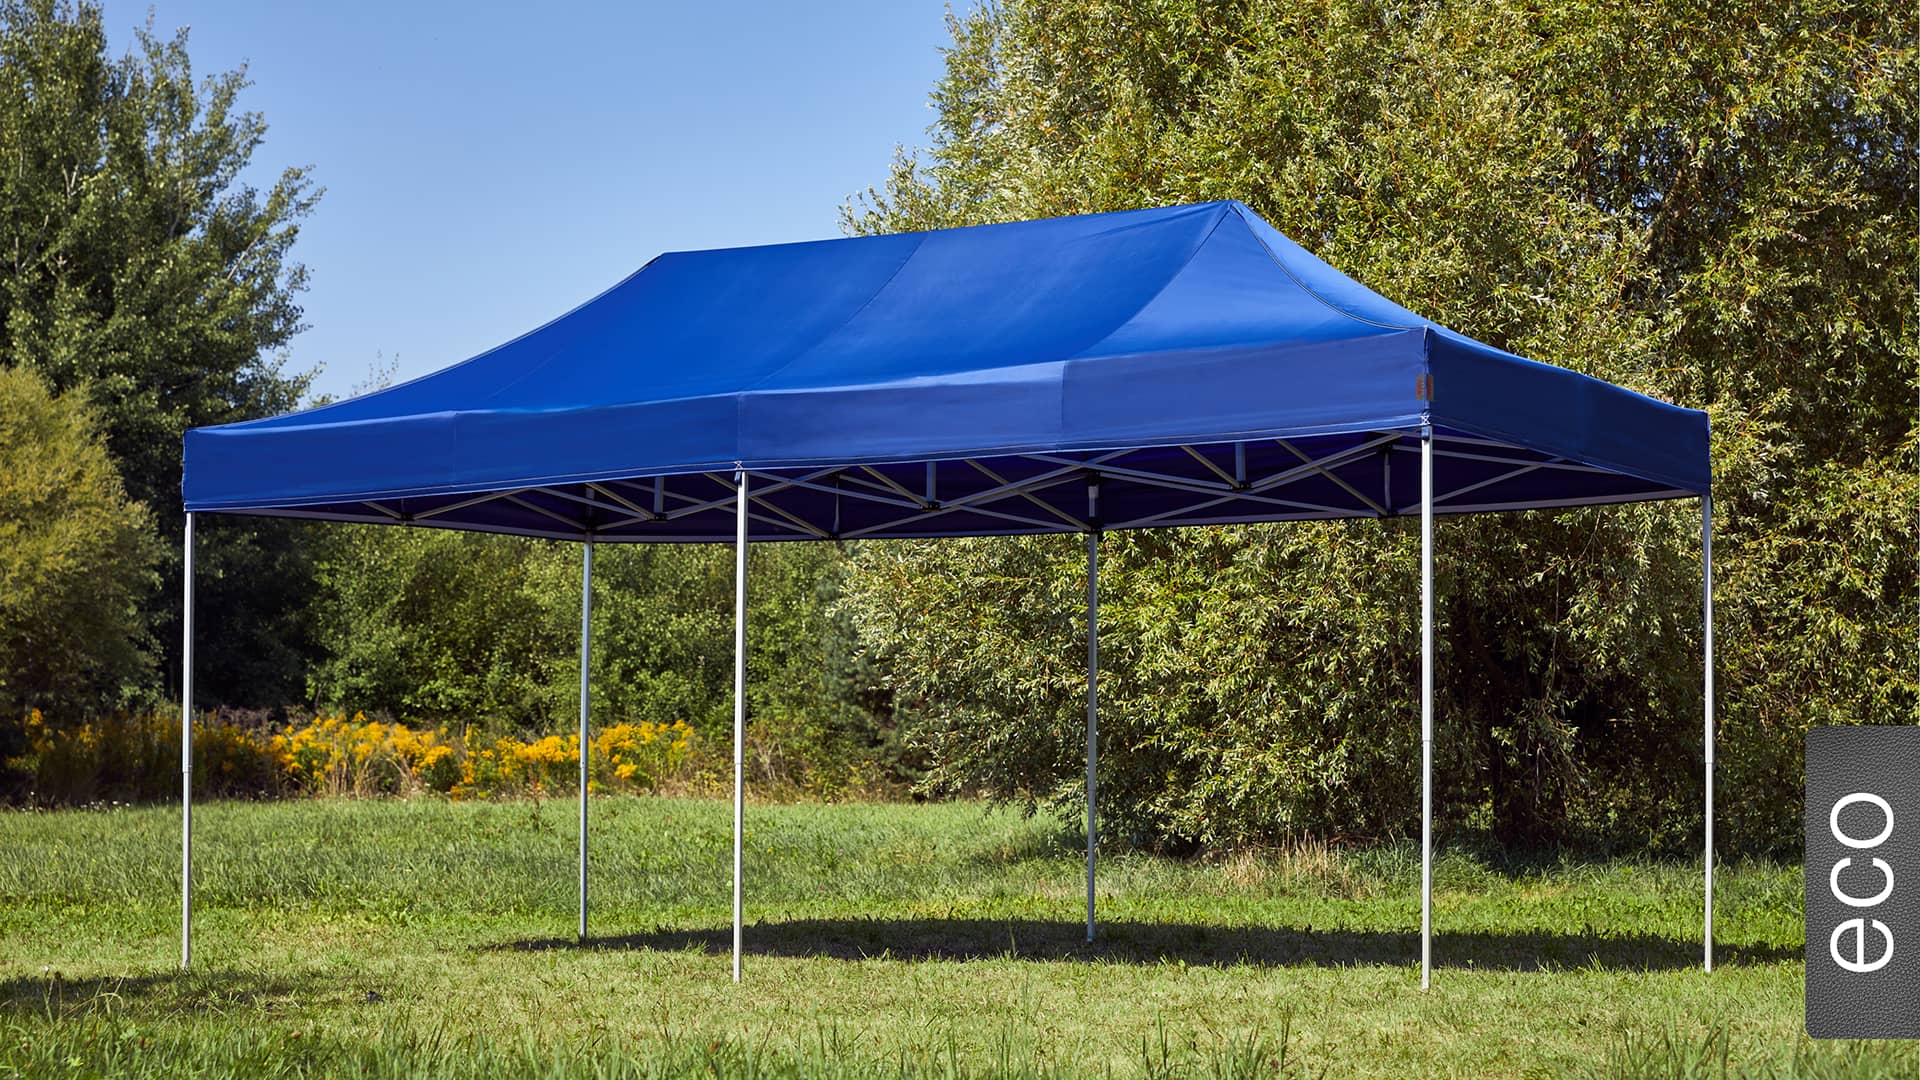 Der 6x3 Faltpavillon der Produktlinie eco mit einem blauen Dach aufgestellt im Garten.